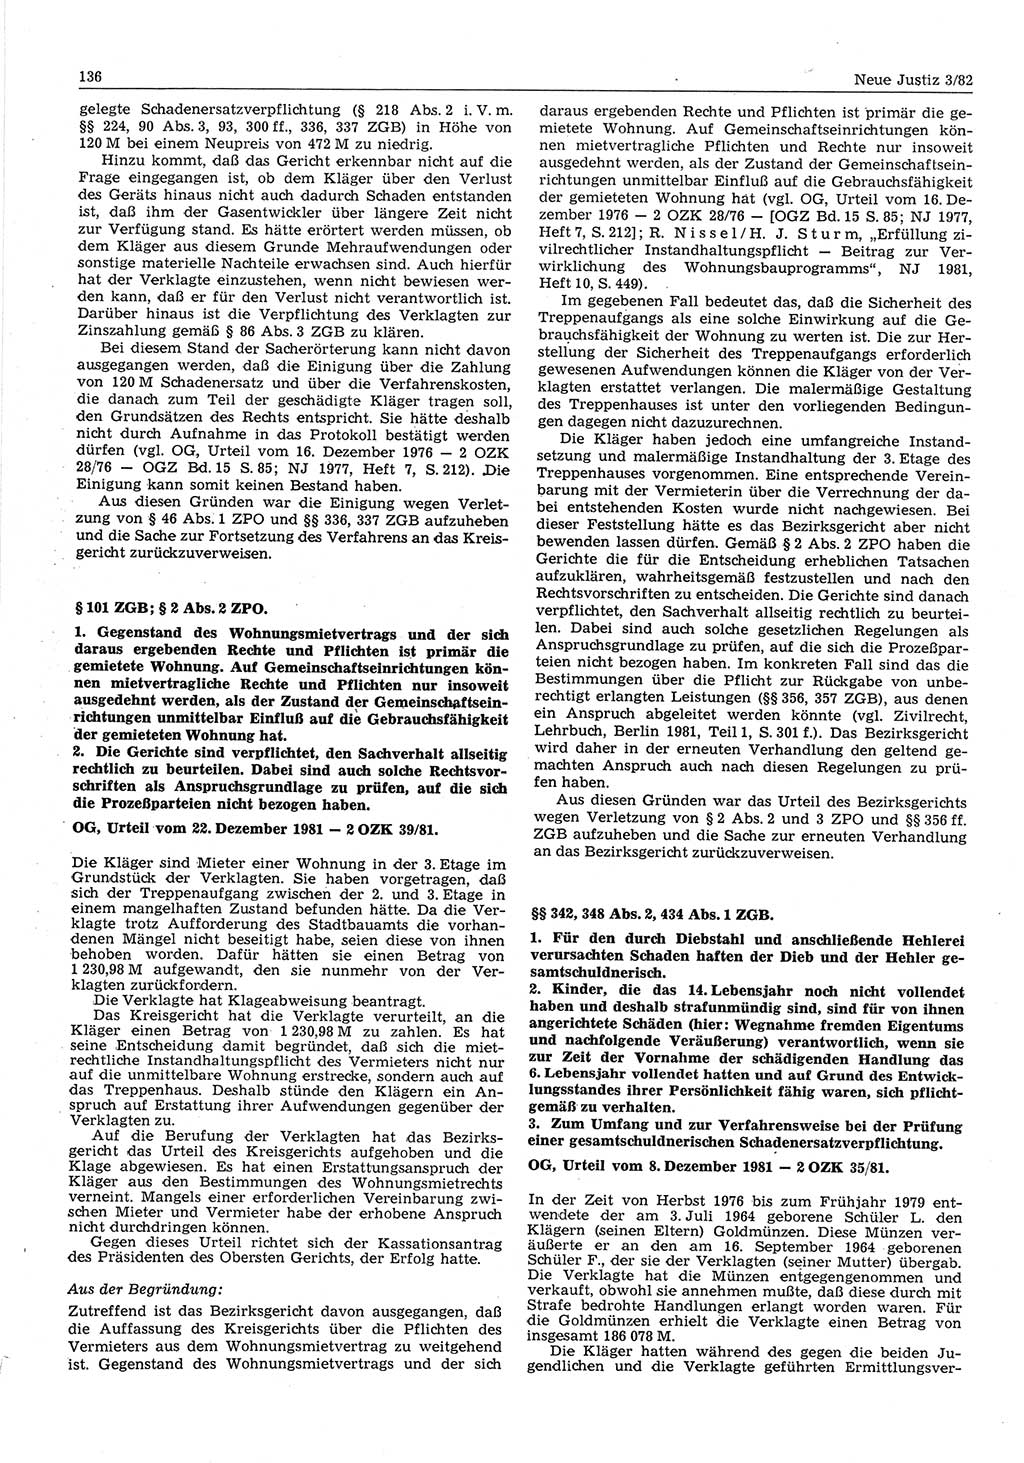 Neue Justiz (NJ), Zeitschrift für sozialistisches Recht und Gesetzlichkeit [Deutsche Demokratische Republik (DDR)], 36. Jahrgang 1982, Seite 136 (NJ DDR 1982, S. 136)